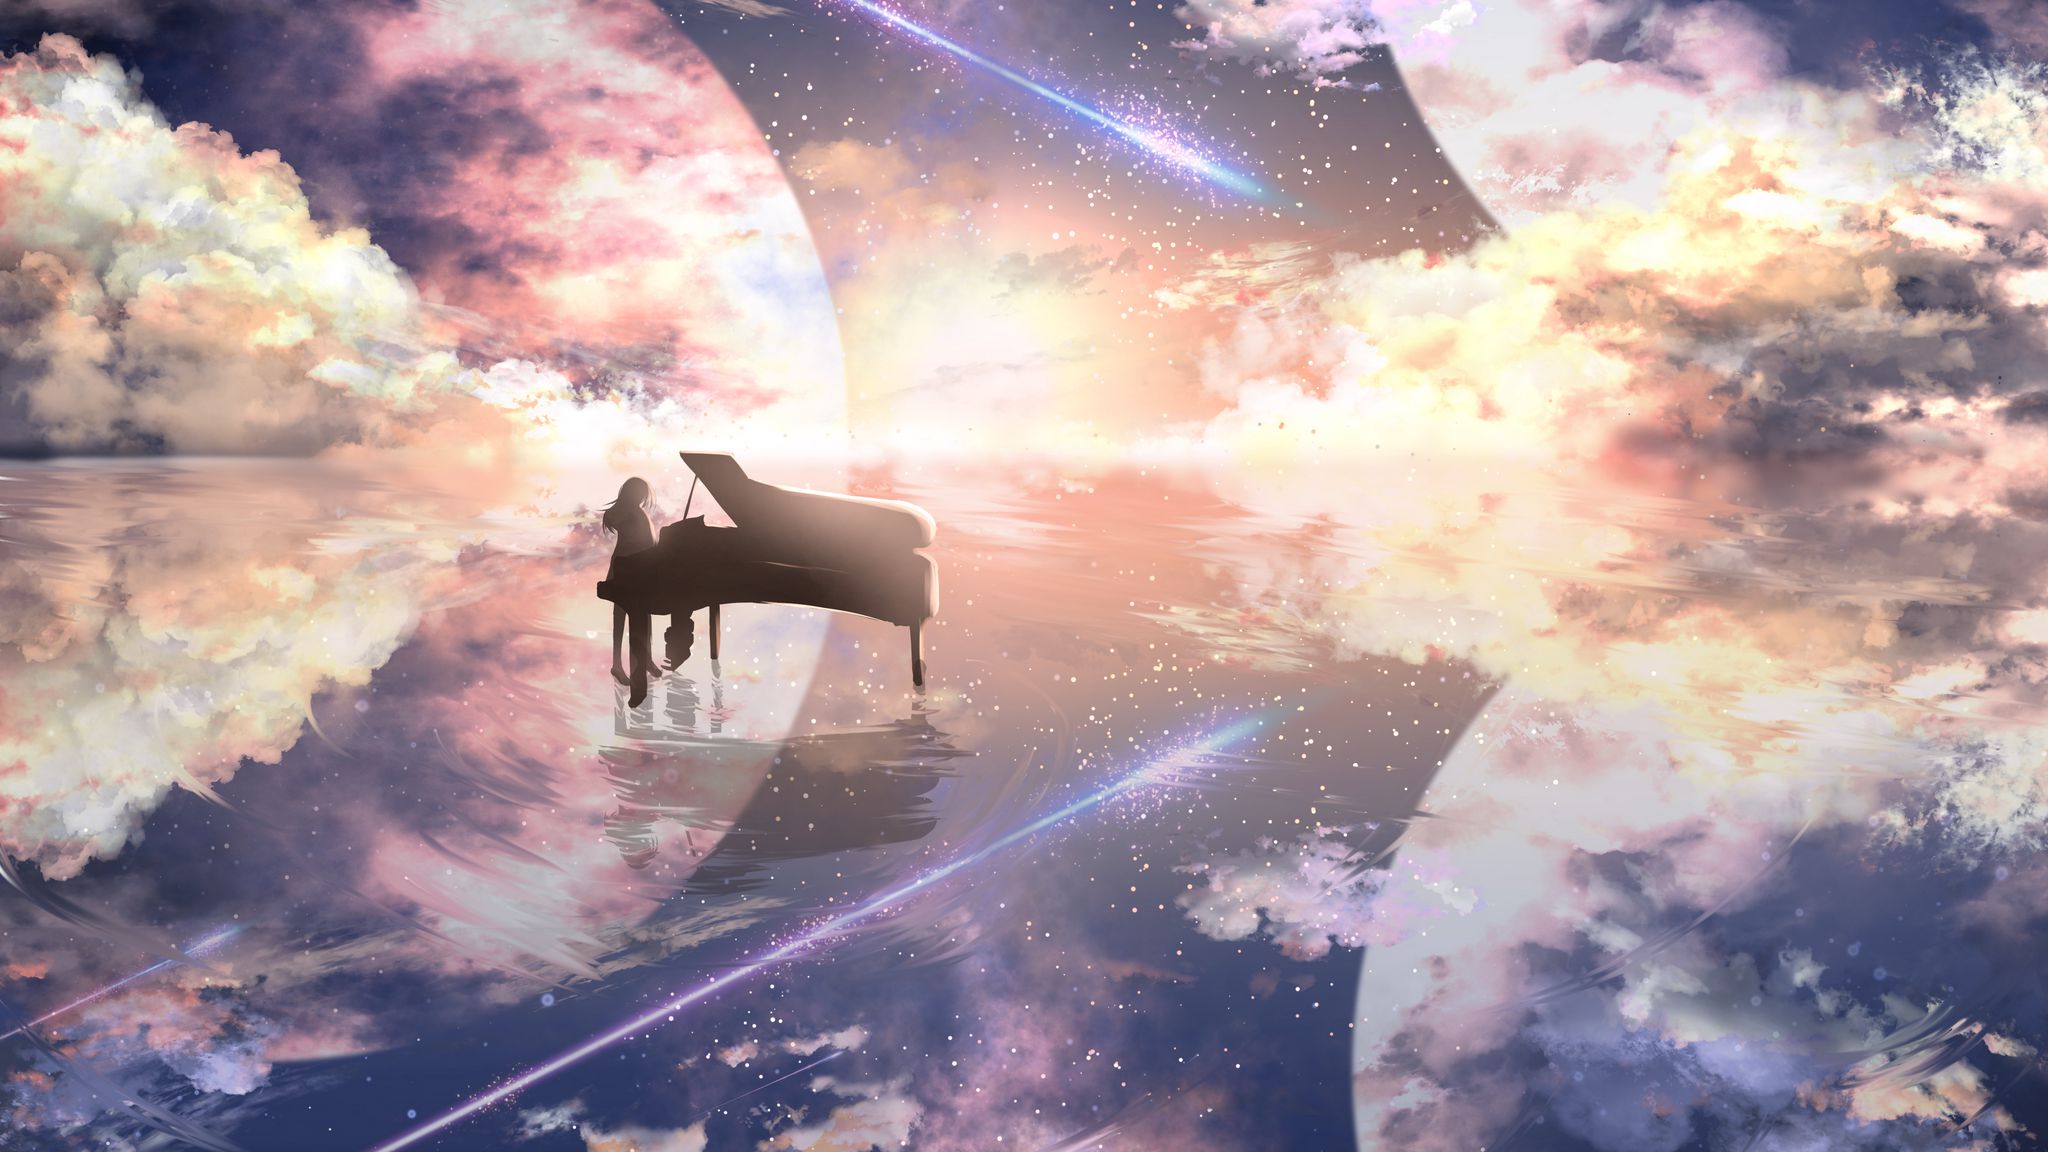 2048x1152 Обои рояль, силуэт, космос, иллюзия, аниме